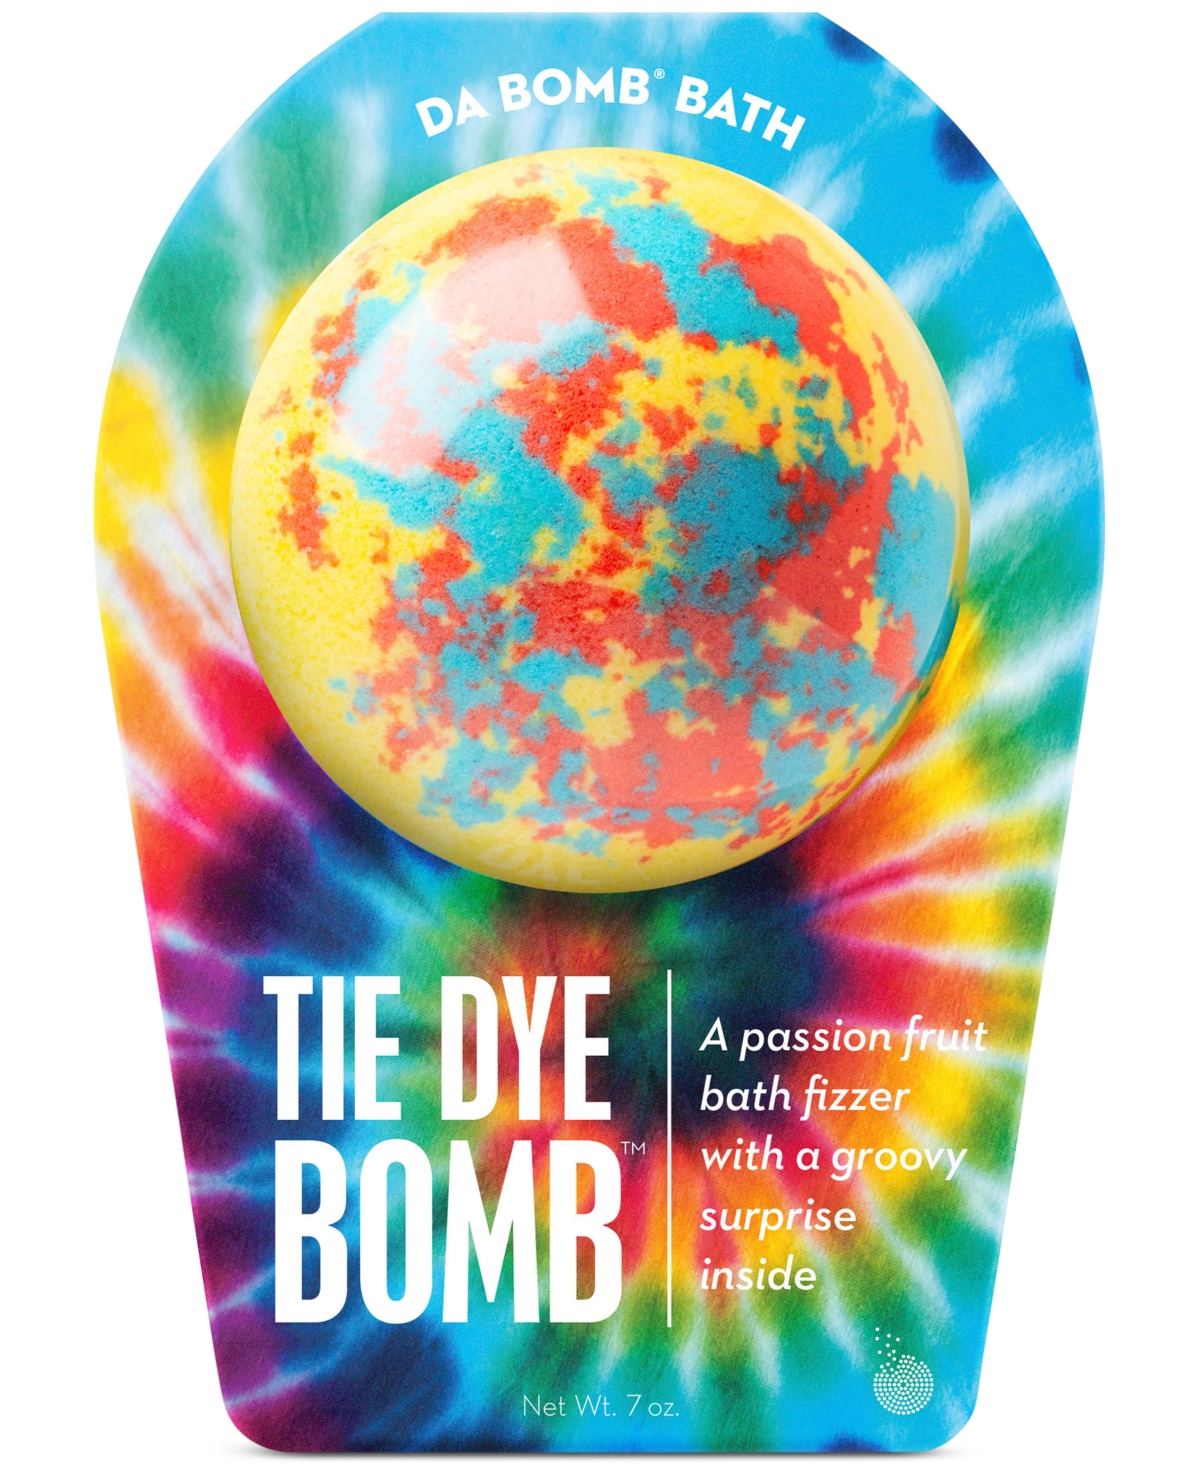 Tie Dye Bath Bomb, 7 oz. - Tie Dye Bomb